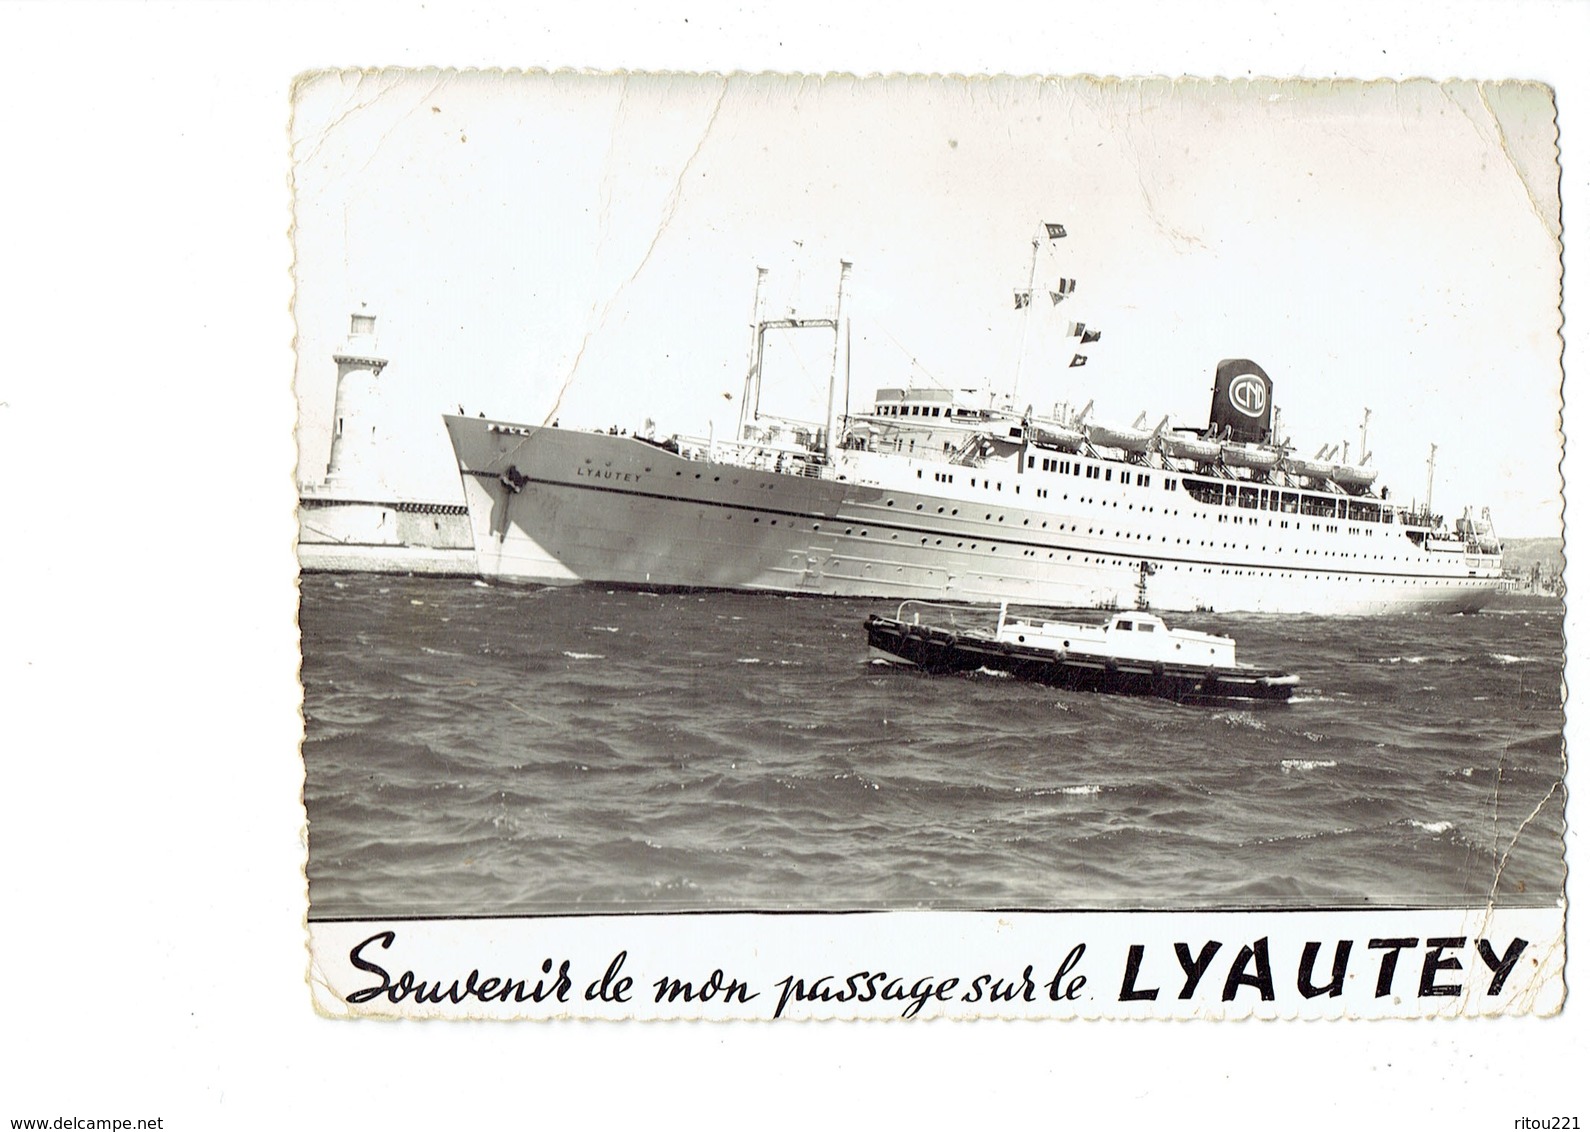 Cpm - Souvenir De Mon Passage Sur Le LYAUTEY - Bateau Remorqueur - CIE PAQUET - Remorqueurs